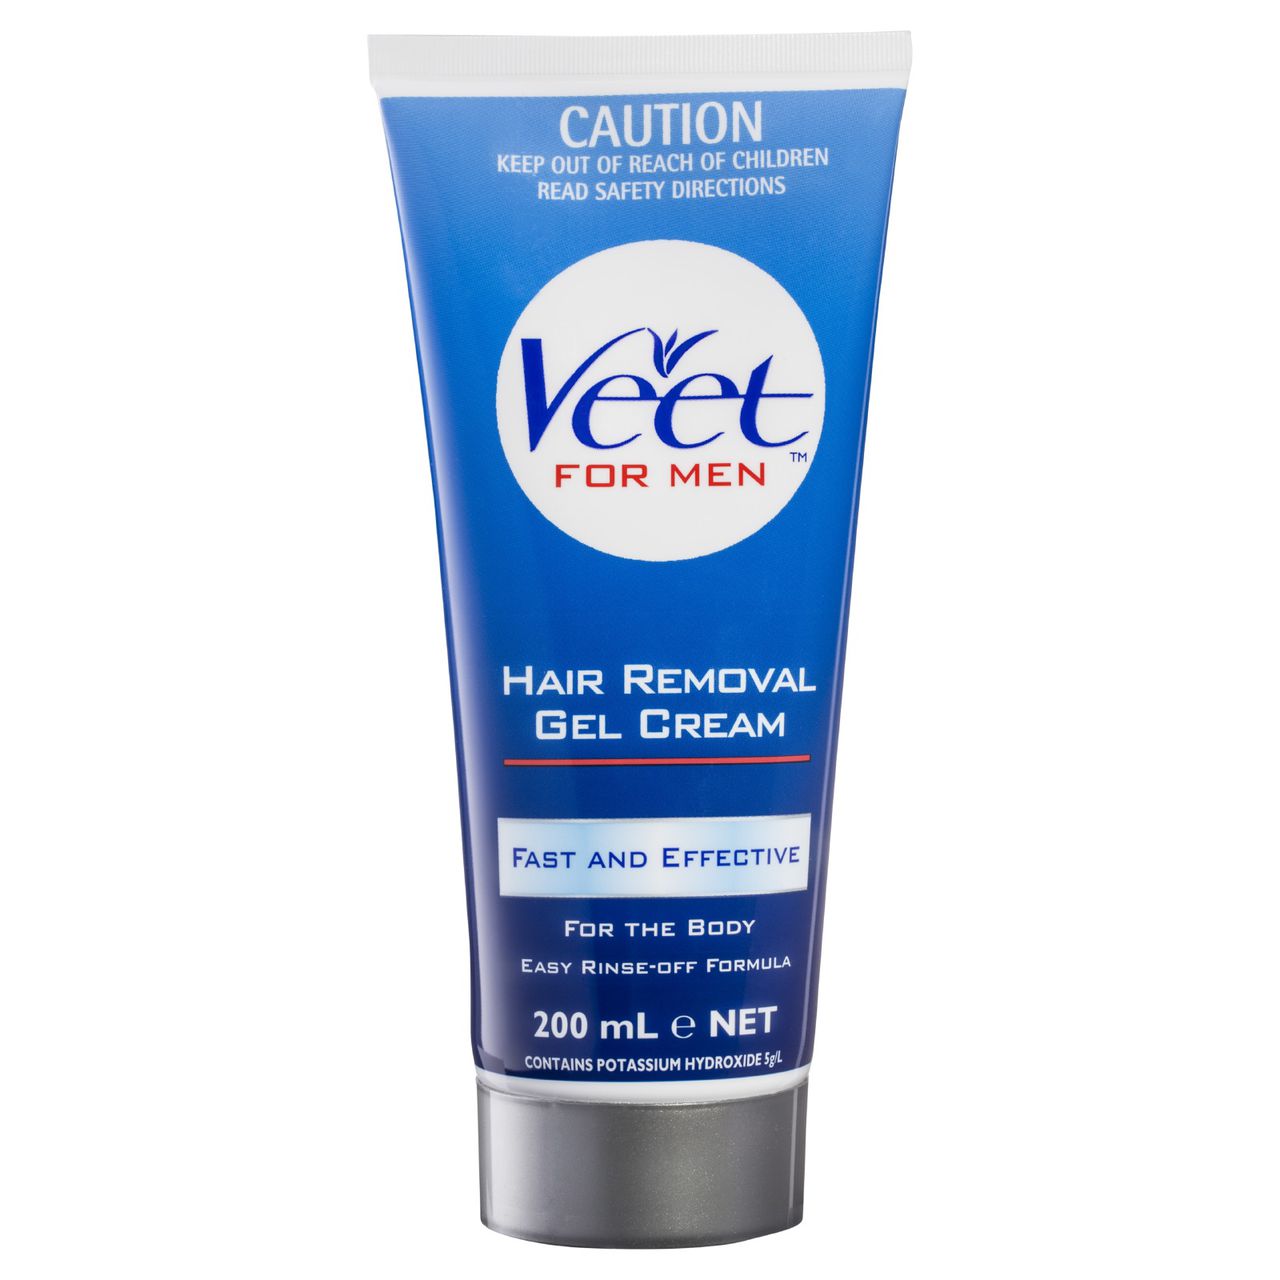 Veet For Men Hair Removal Gel Cream For The Body Veet Australia